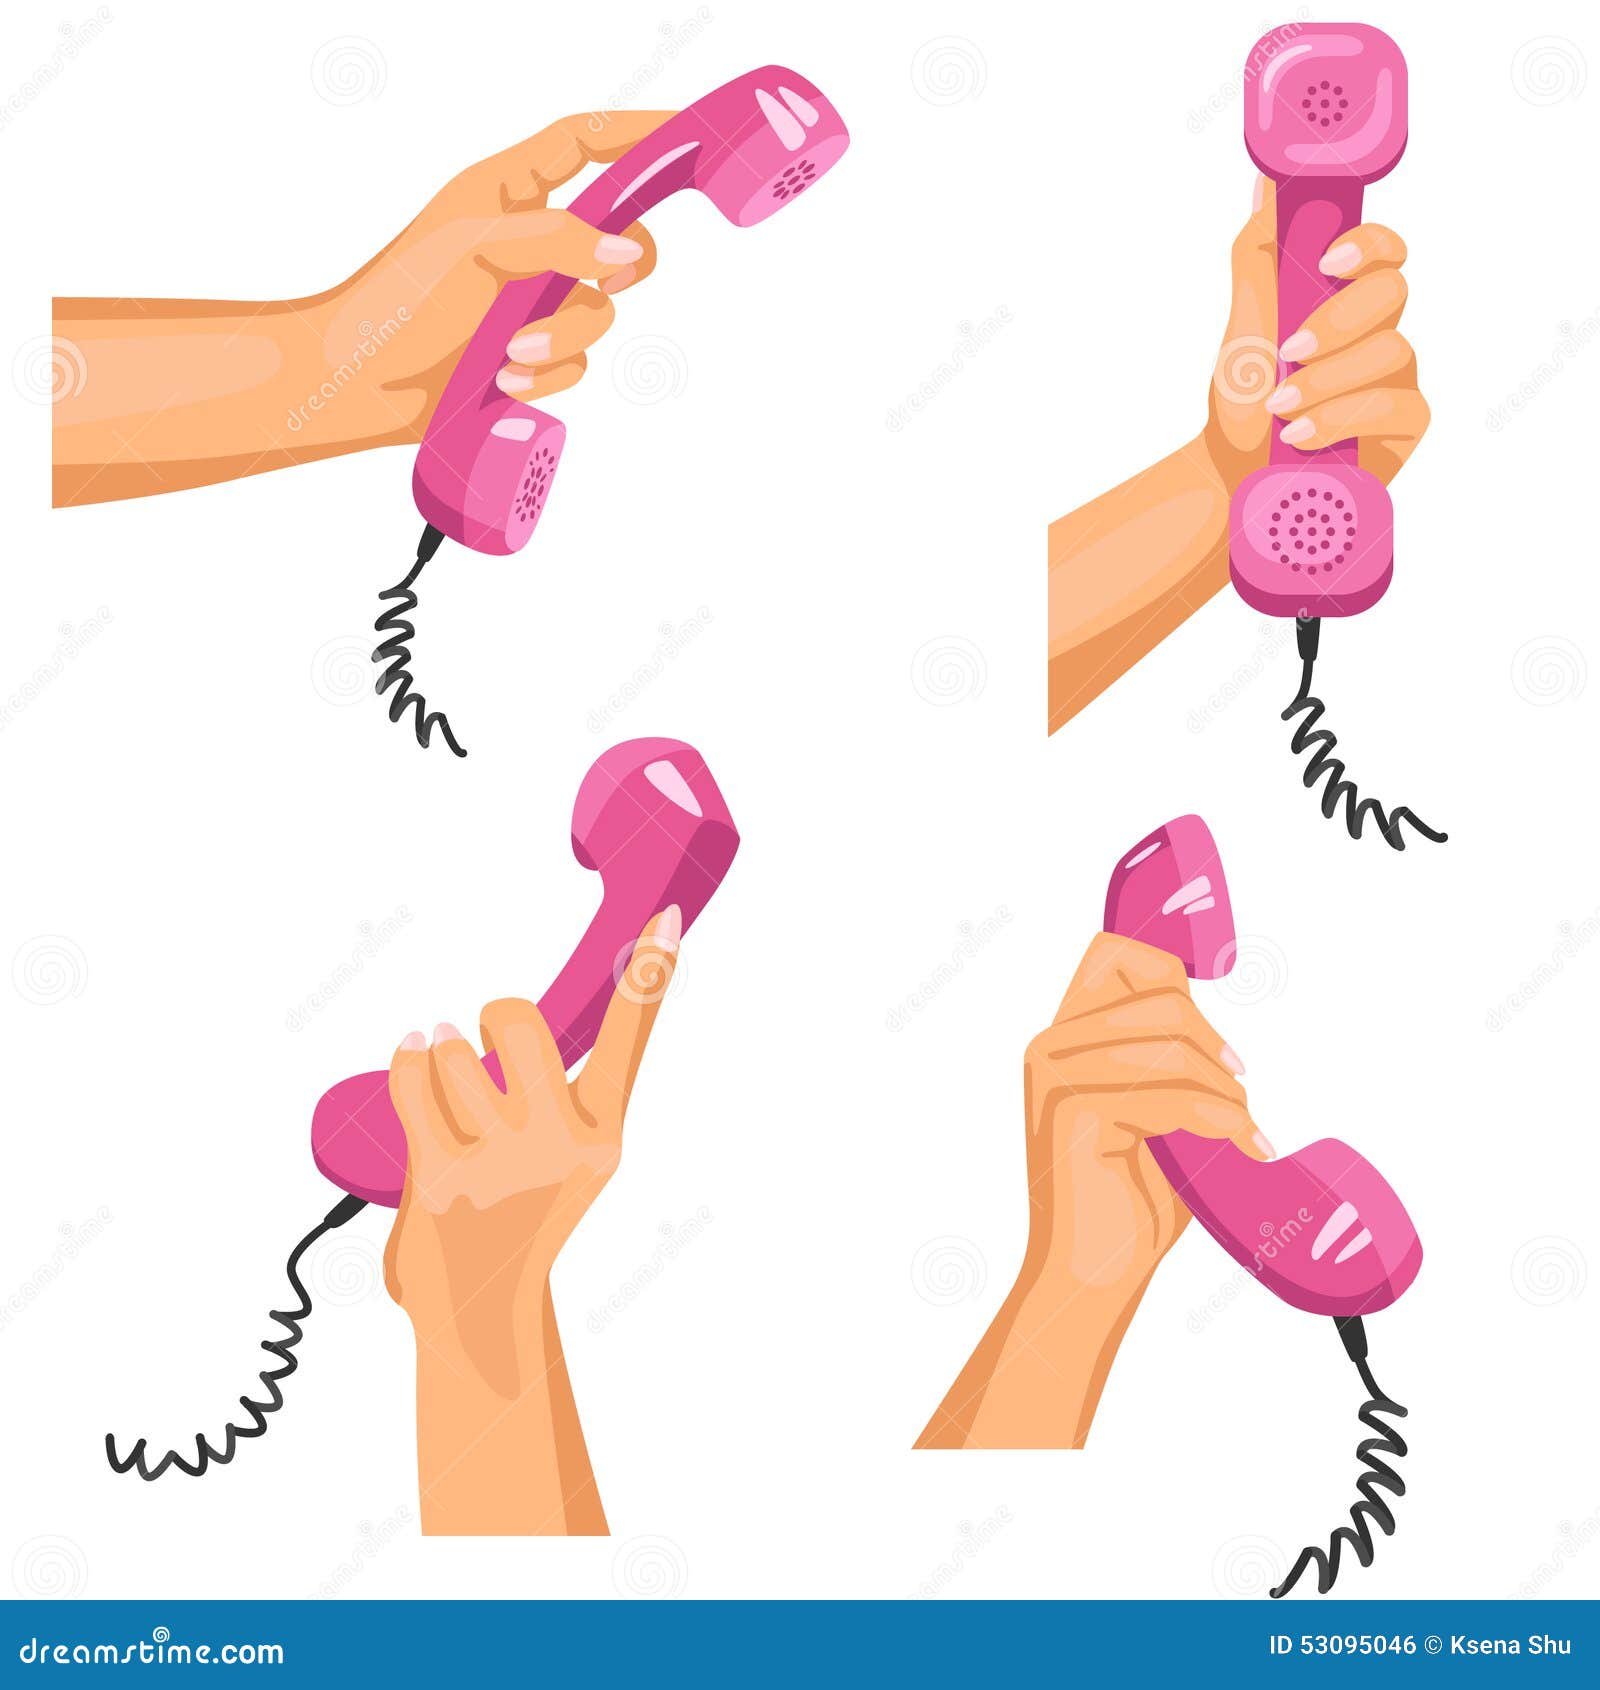 Анвап тубе на телефон. Телефонная трубка в руке. Рука держит телефонную трубку. Телефонная трубка в руке референс. Женская рука с трубкой телефона.